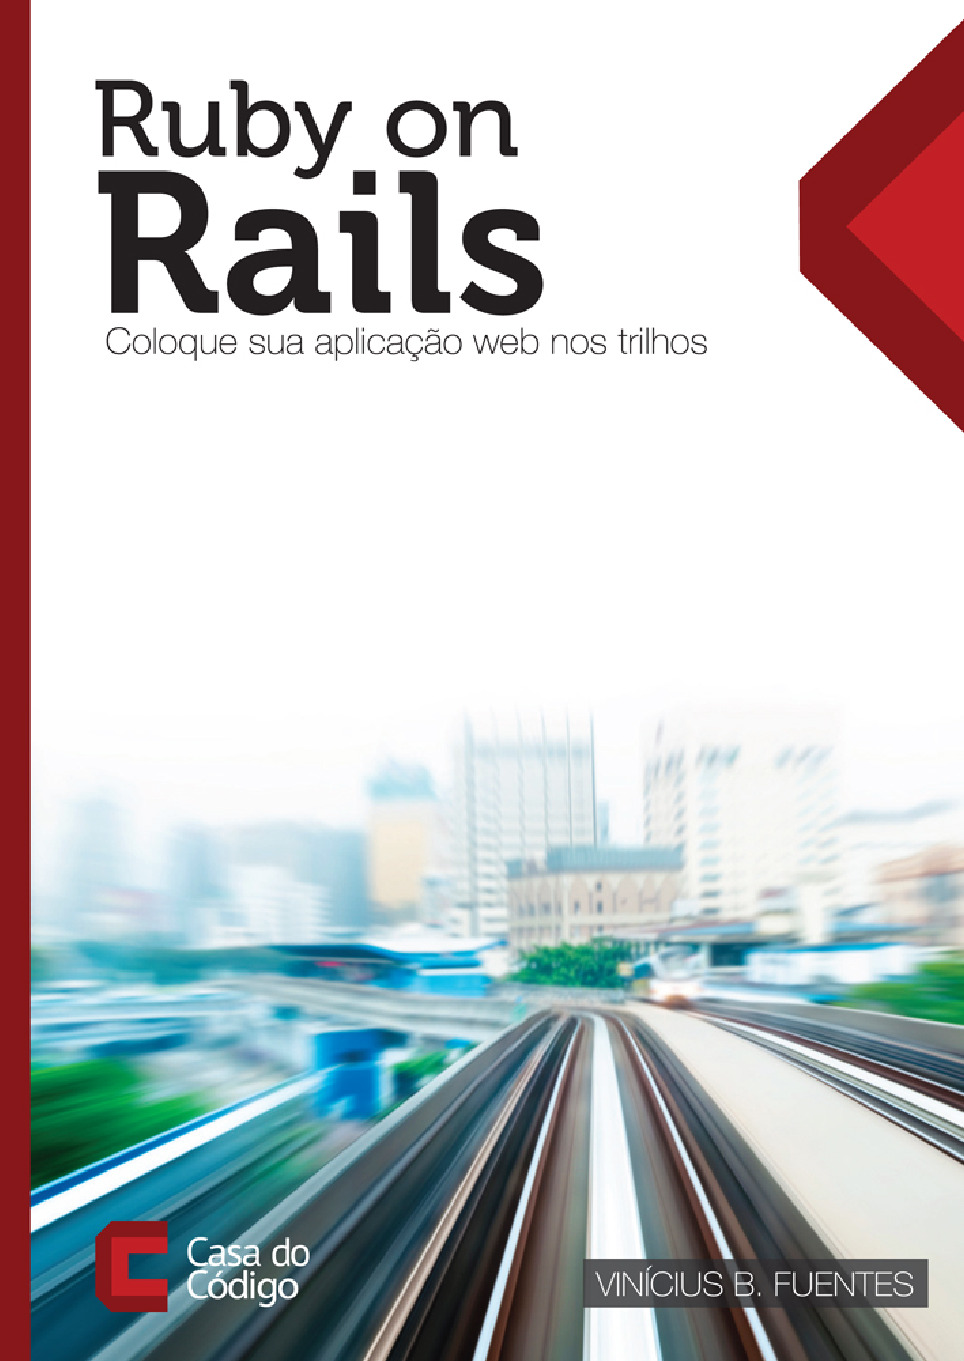 Ruby on Rails – coloque sua aplicacao web nos trilhos – Casa do Codigo